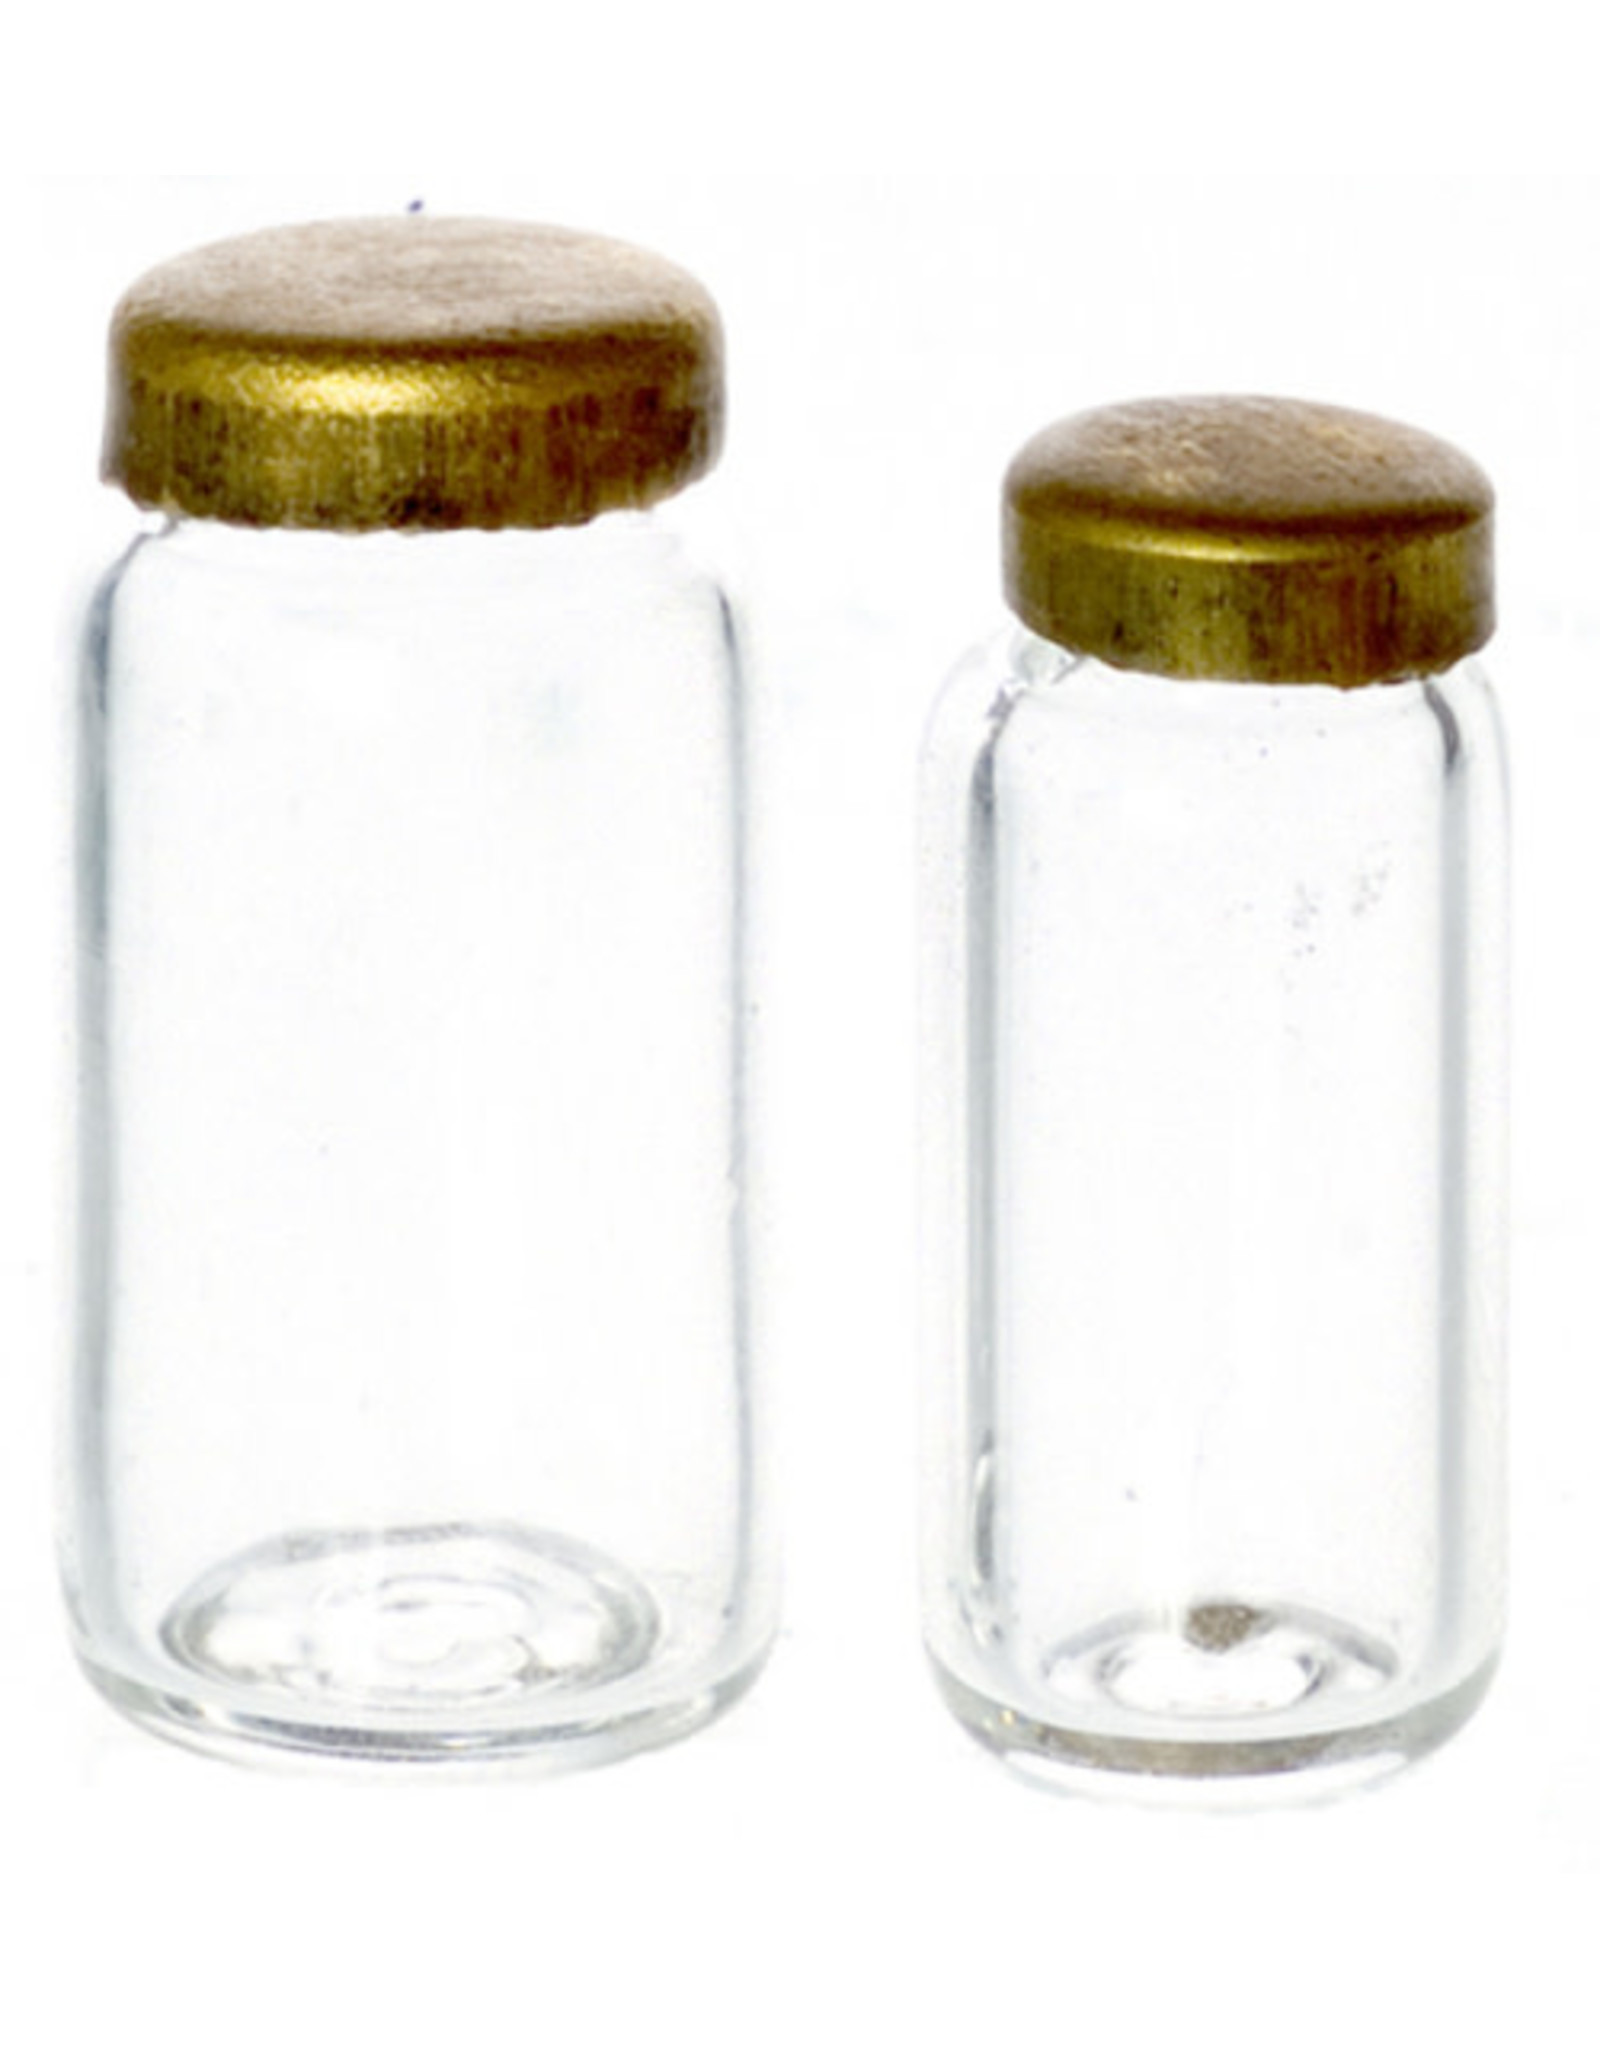 Jarres en verre avec couvercle en métal (2) miniatures 1:12